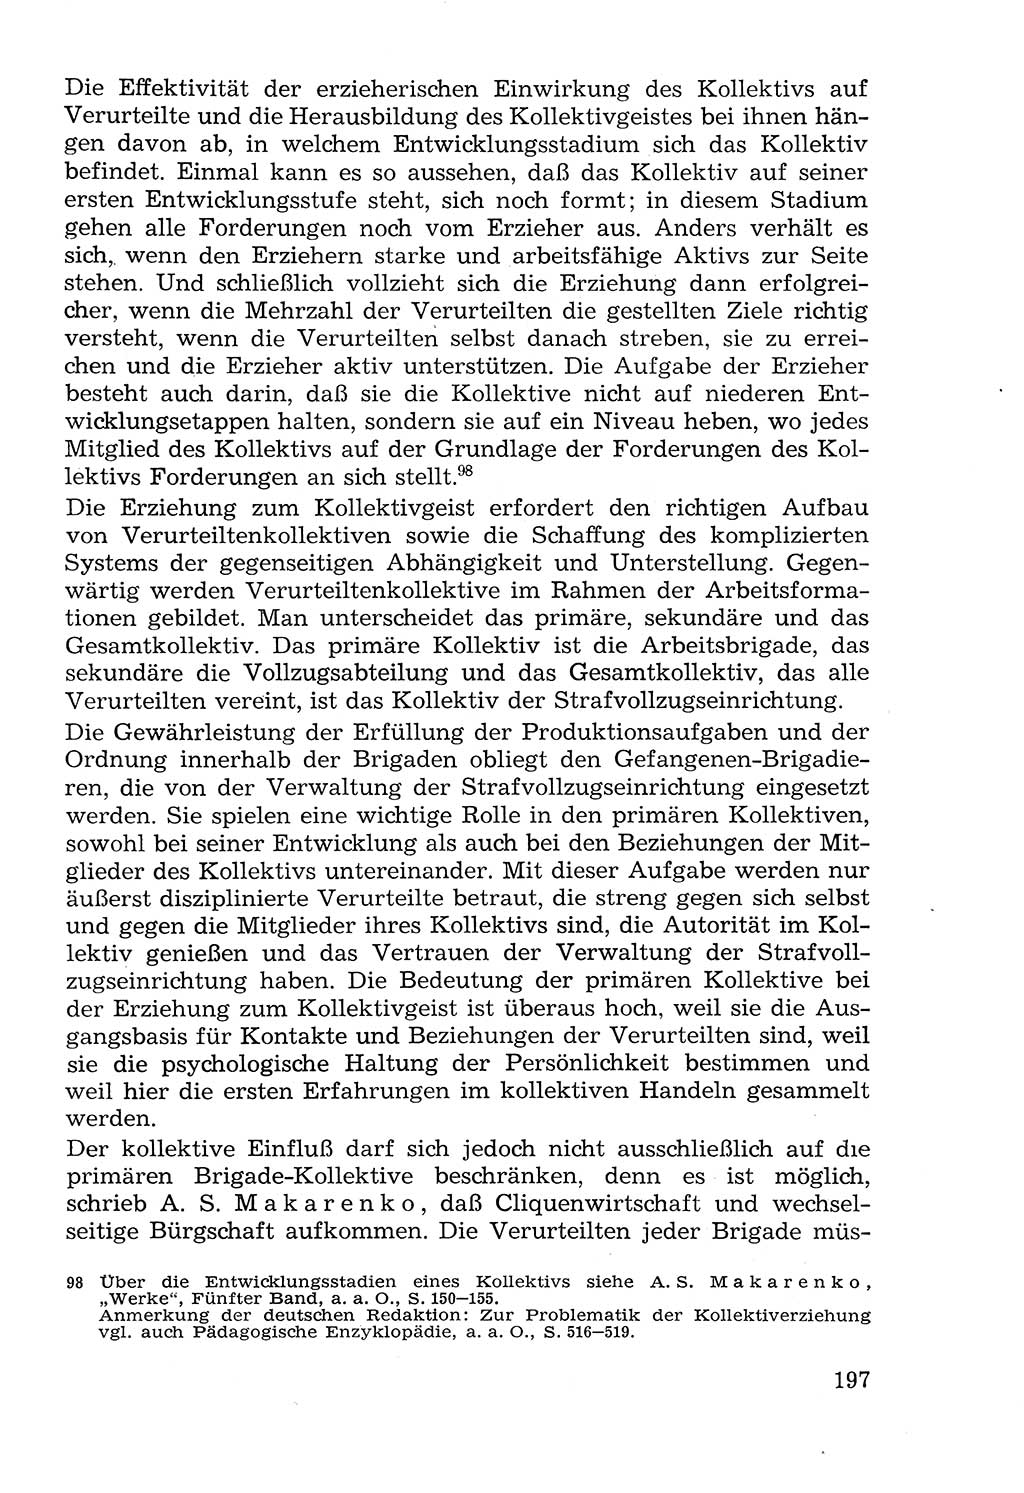 Lehrbuch der Strafvollzugspädagogik [Deutsche Demokratische Republik (DDR)] 1969, Seite 197 (Lb. SV-Pd. DDR 1969, S. 197)